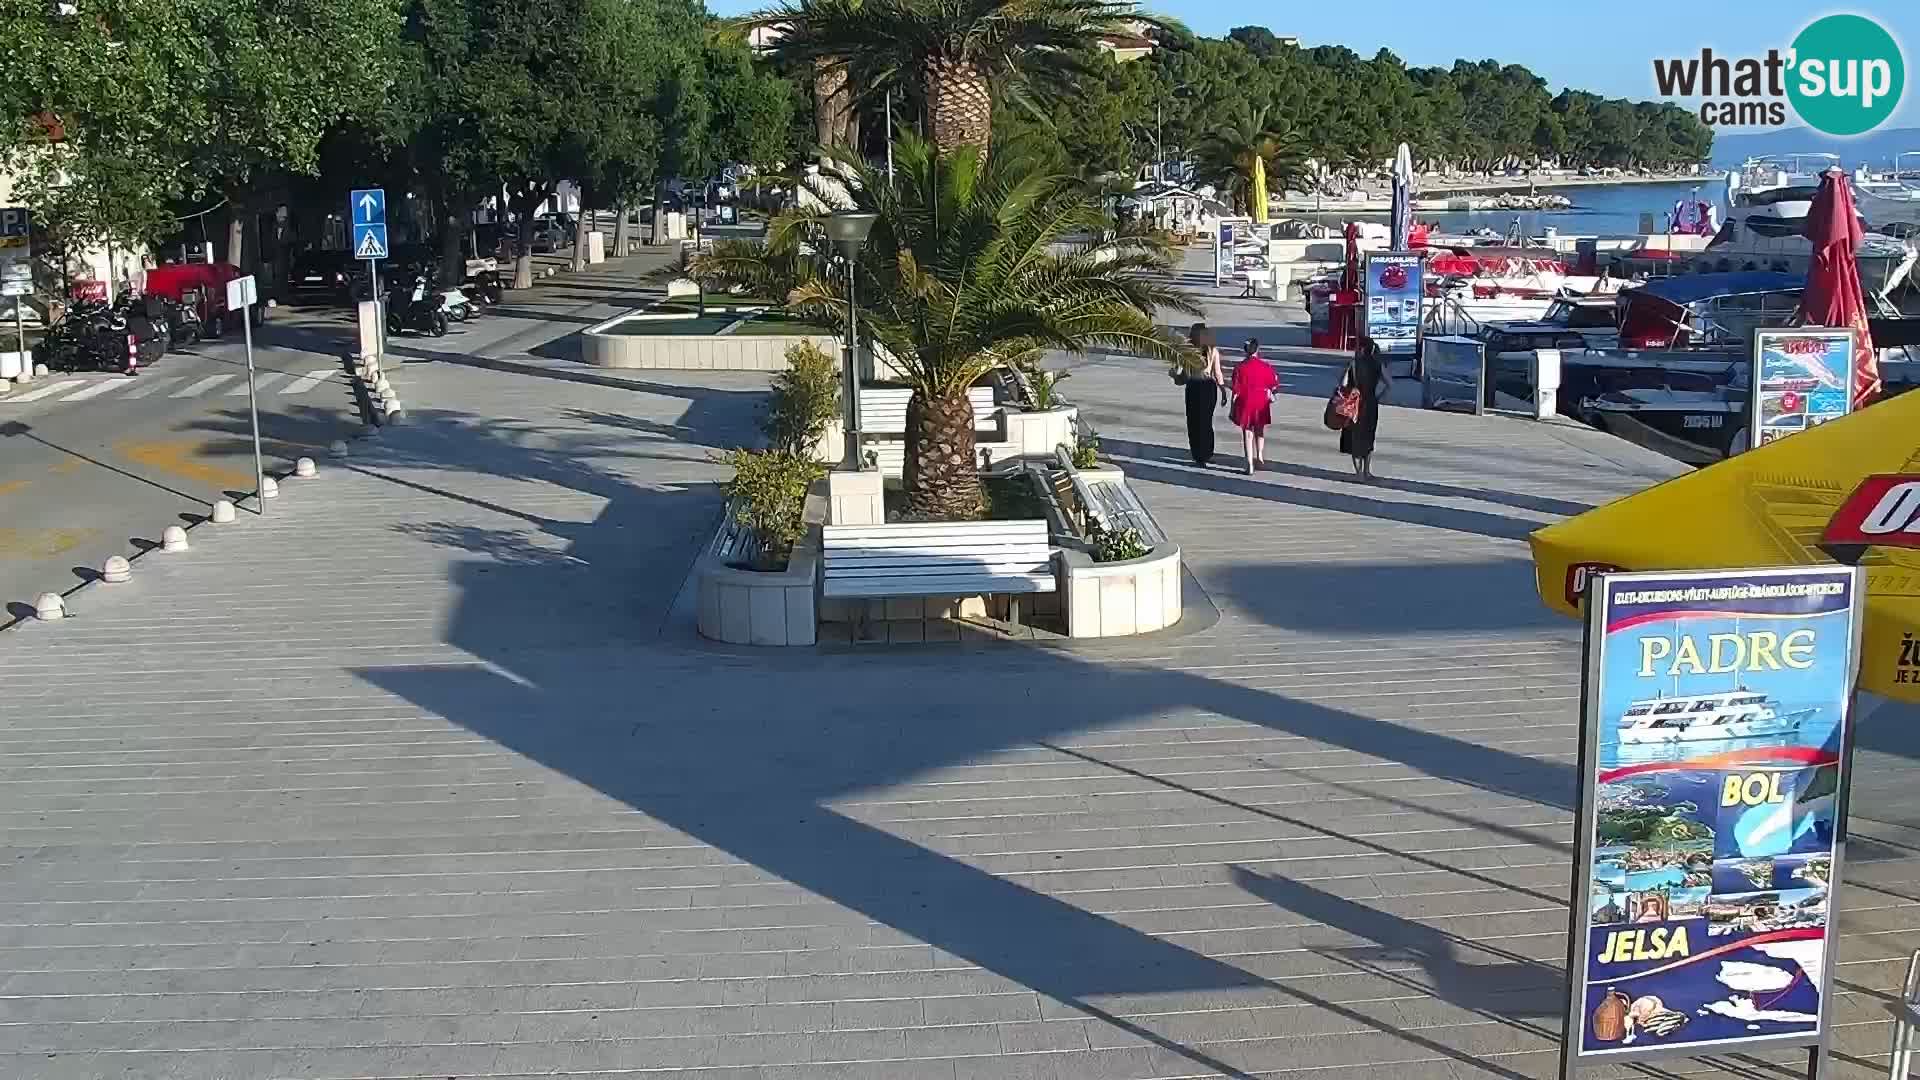 Seaside promenade in Baška Voda